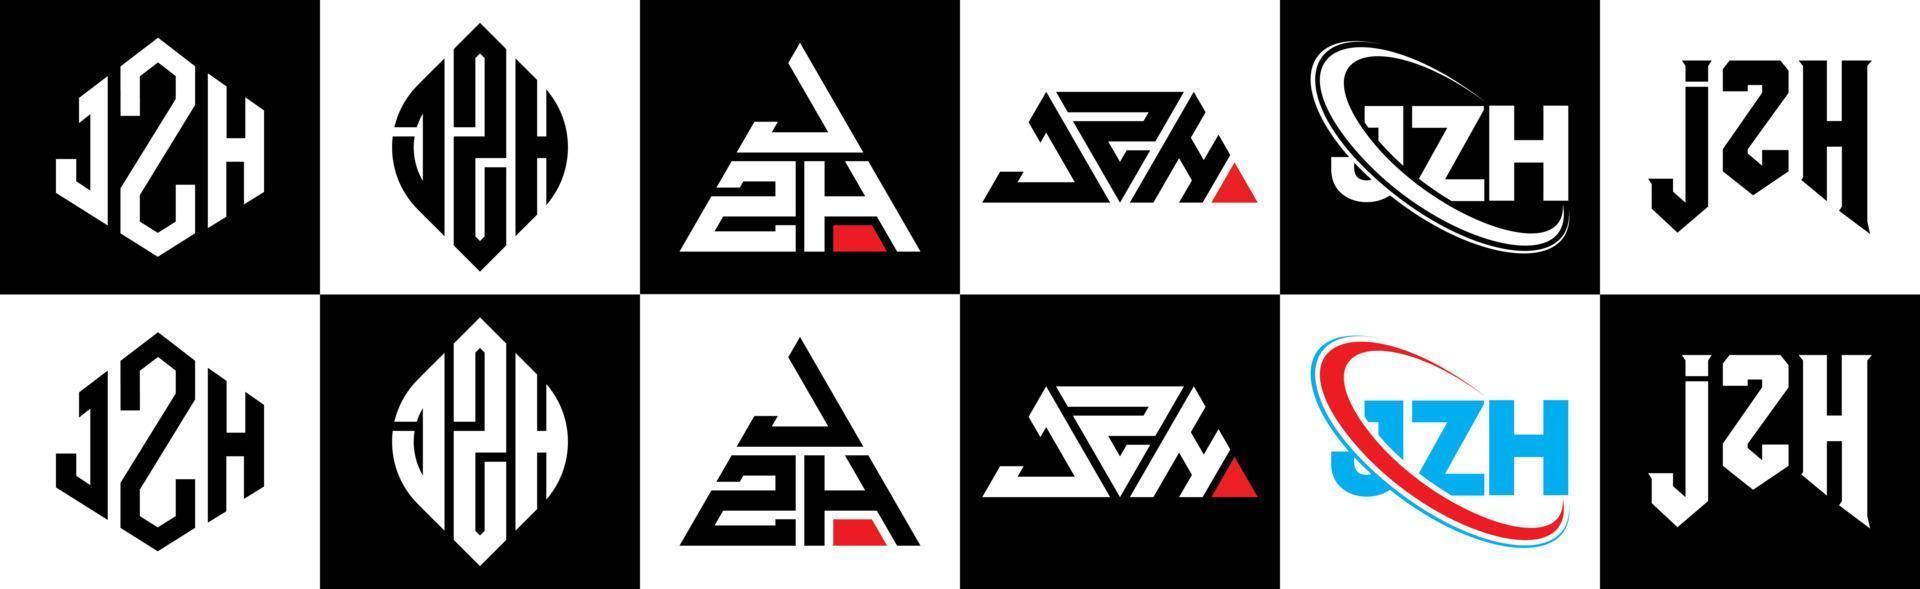 jzh-Buchstaben-Logo-Design in sechs Stilen. jzh polygon, kreis, dreieck, hexagon, flacher und einfacher stil mit schwarz-weißem farbvariationsbuchstabenlogo in einer zeichenfläche. jzh minimalistisches und klassisches Logo vektor